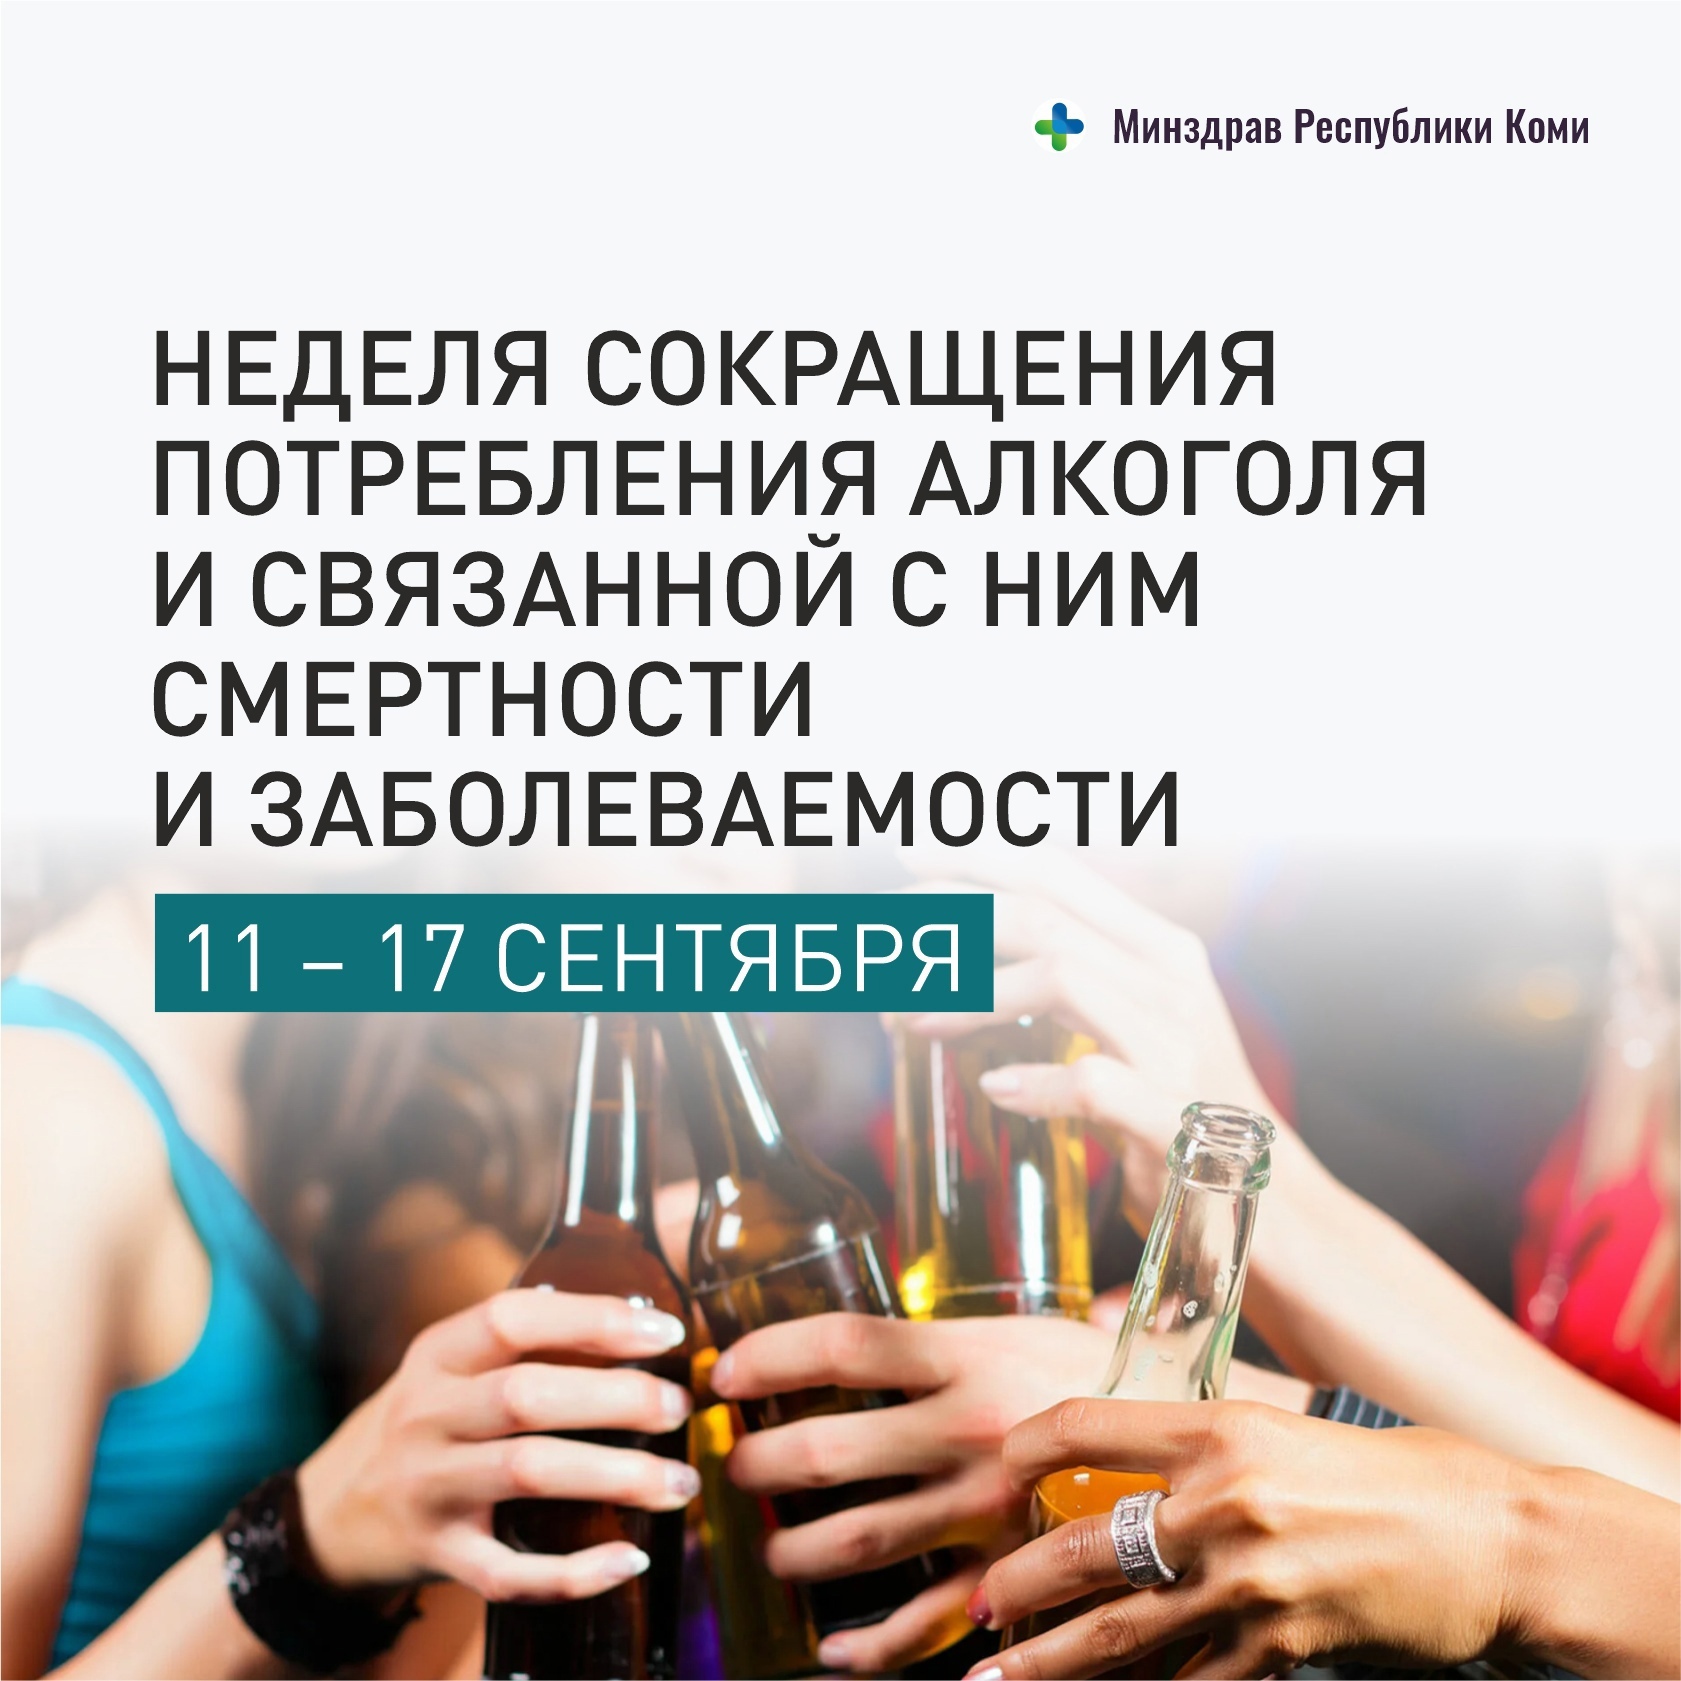 Неделя сокращения потребления алкоголя и связанной с ним смертности и заболеваемости..